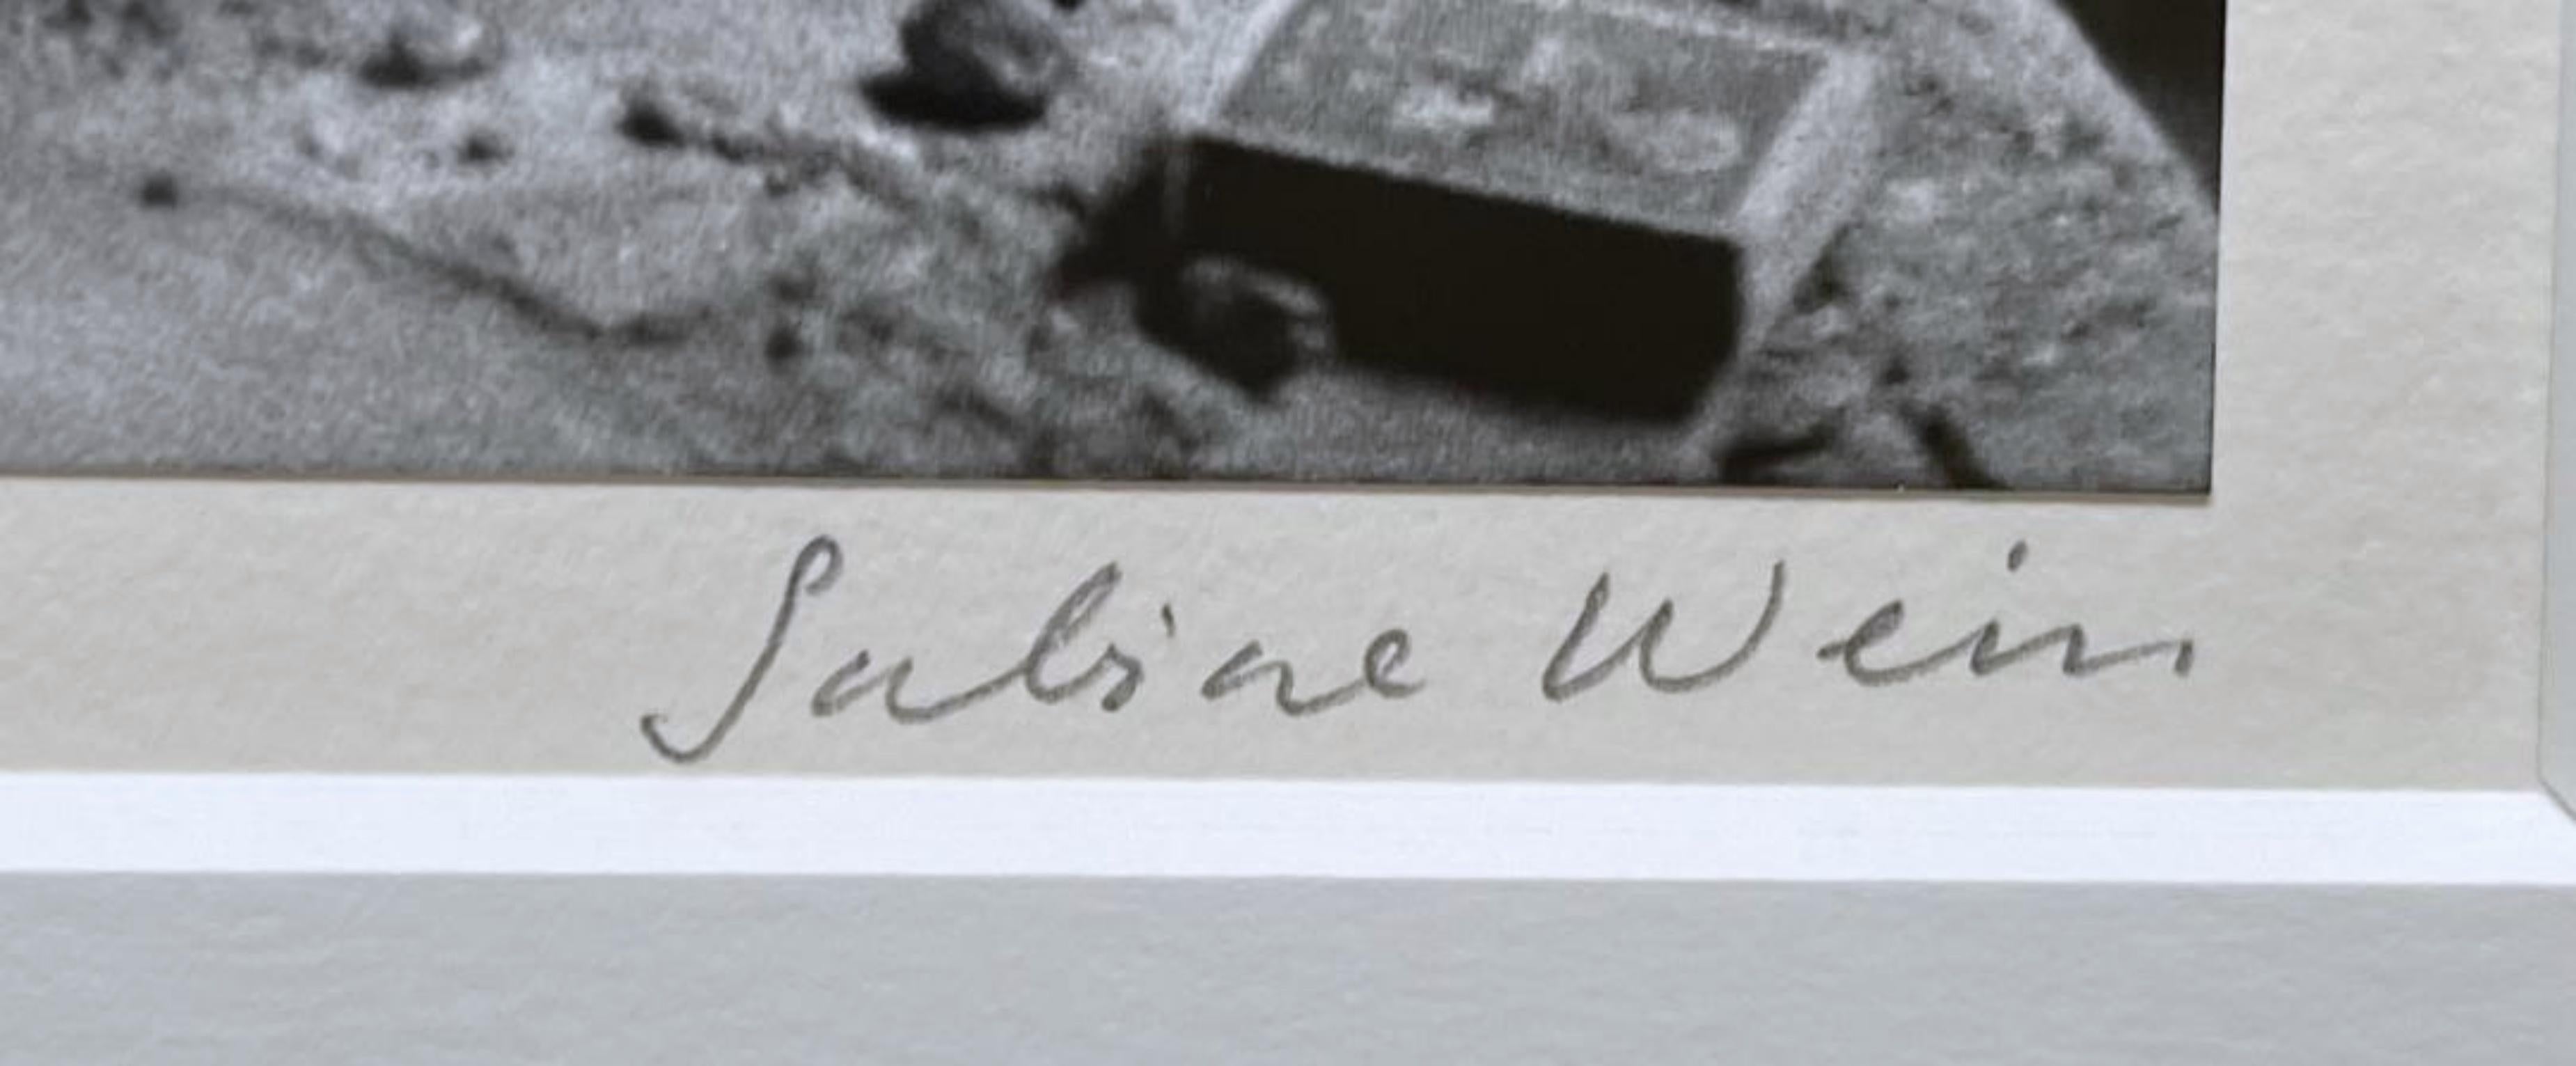 Sabine Weiss
Alberto Giacometti dans son Atelier, 1954 (Giacometti in seinem Atelier), um 1970
Gelatinesilberdruck auf Papier
Signiert in Graphit von Sabine Weiss auf dem Passepartout direkt unter der Fotografie
Inklusive Rahmen
Dieses mittlerweile